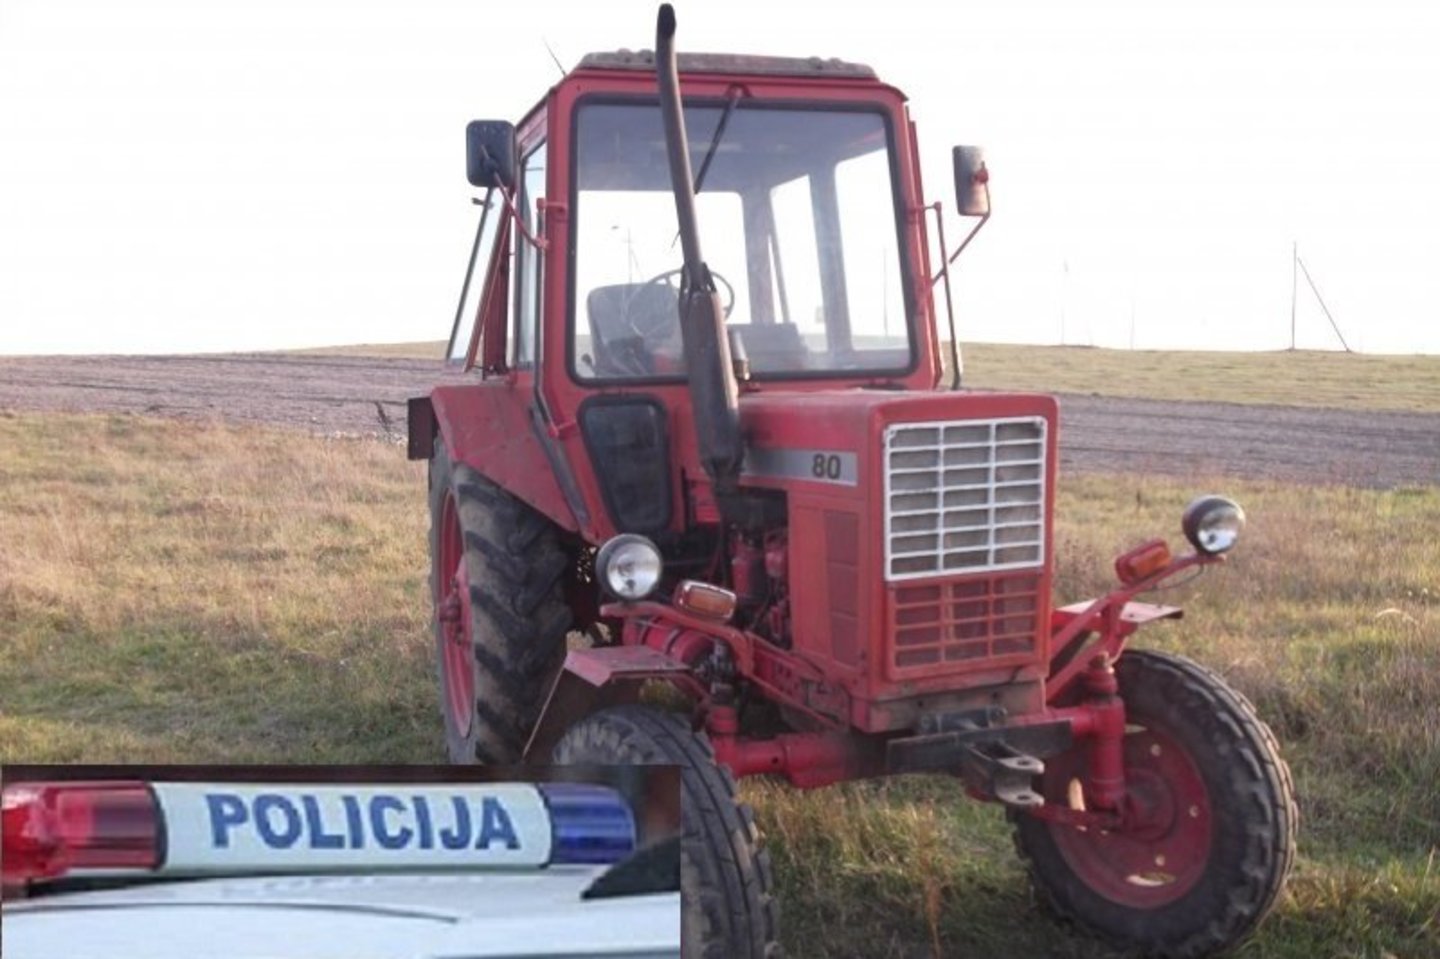 Radviliškio rajono gyventojas Kęstas M. išgėrė 4 litrus 6 laipsnių stiprumo alaus ir sugalvojo tetos traktoriumi „Belarus“ nuvežti karvėms vandens.